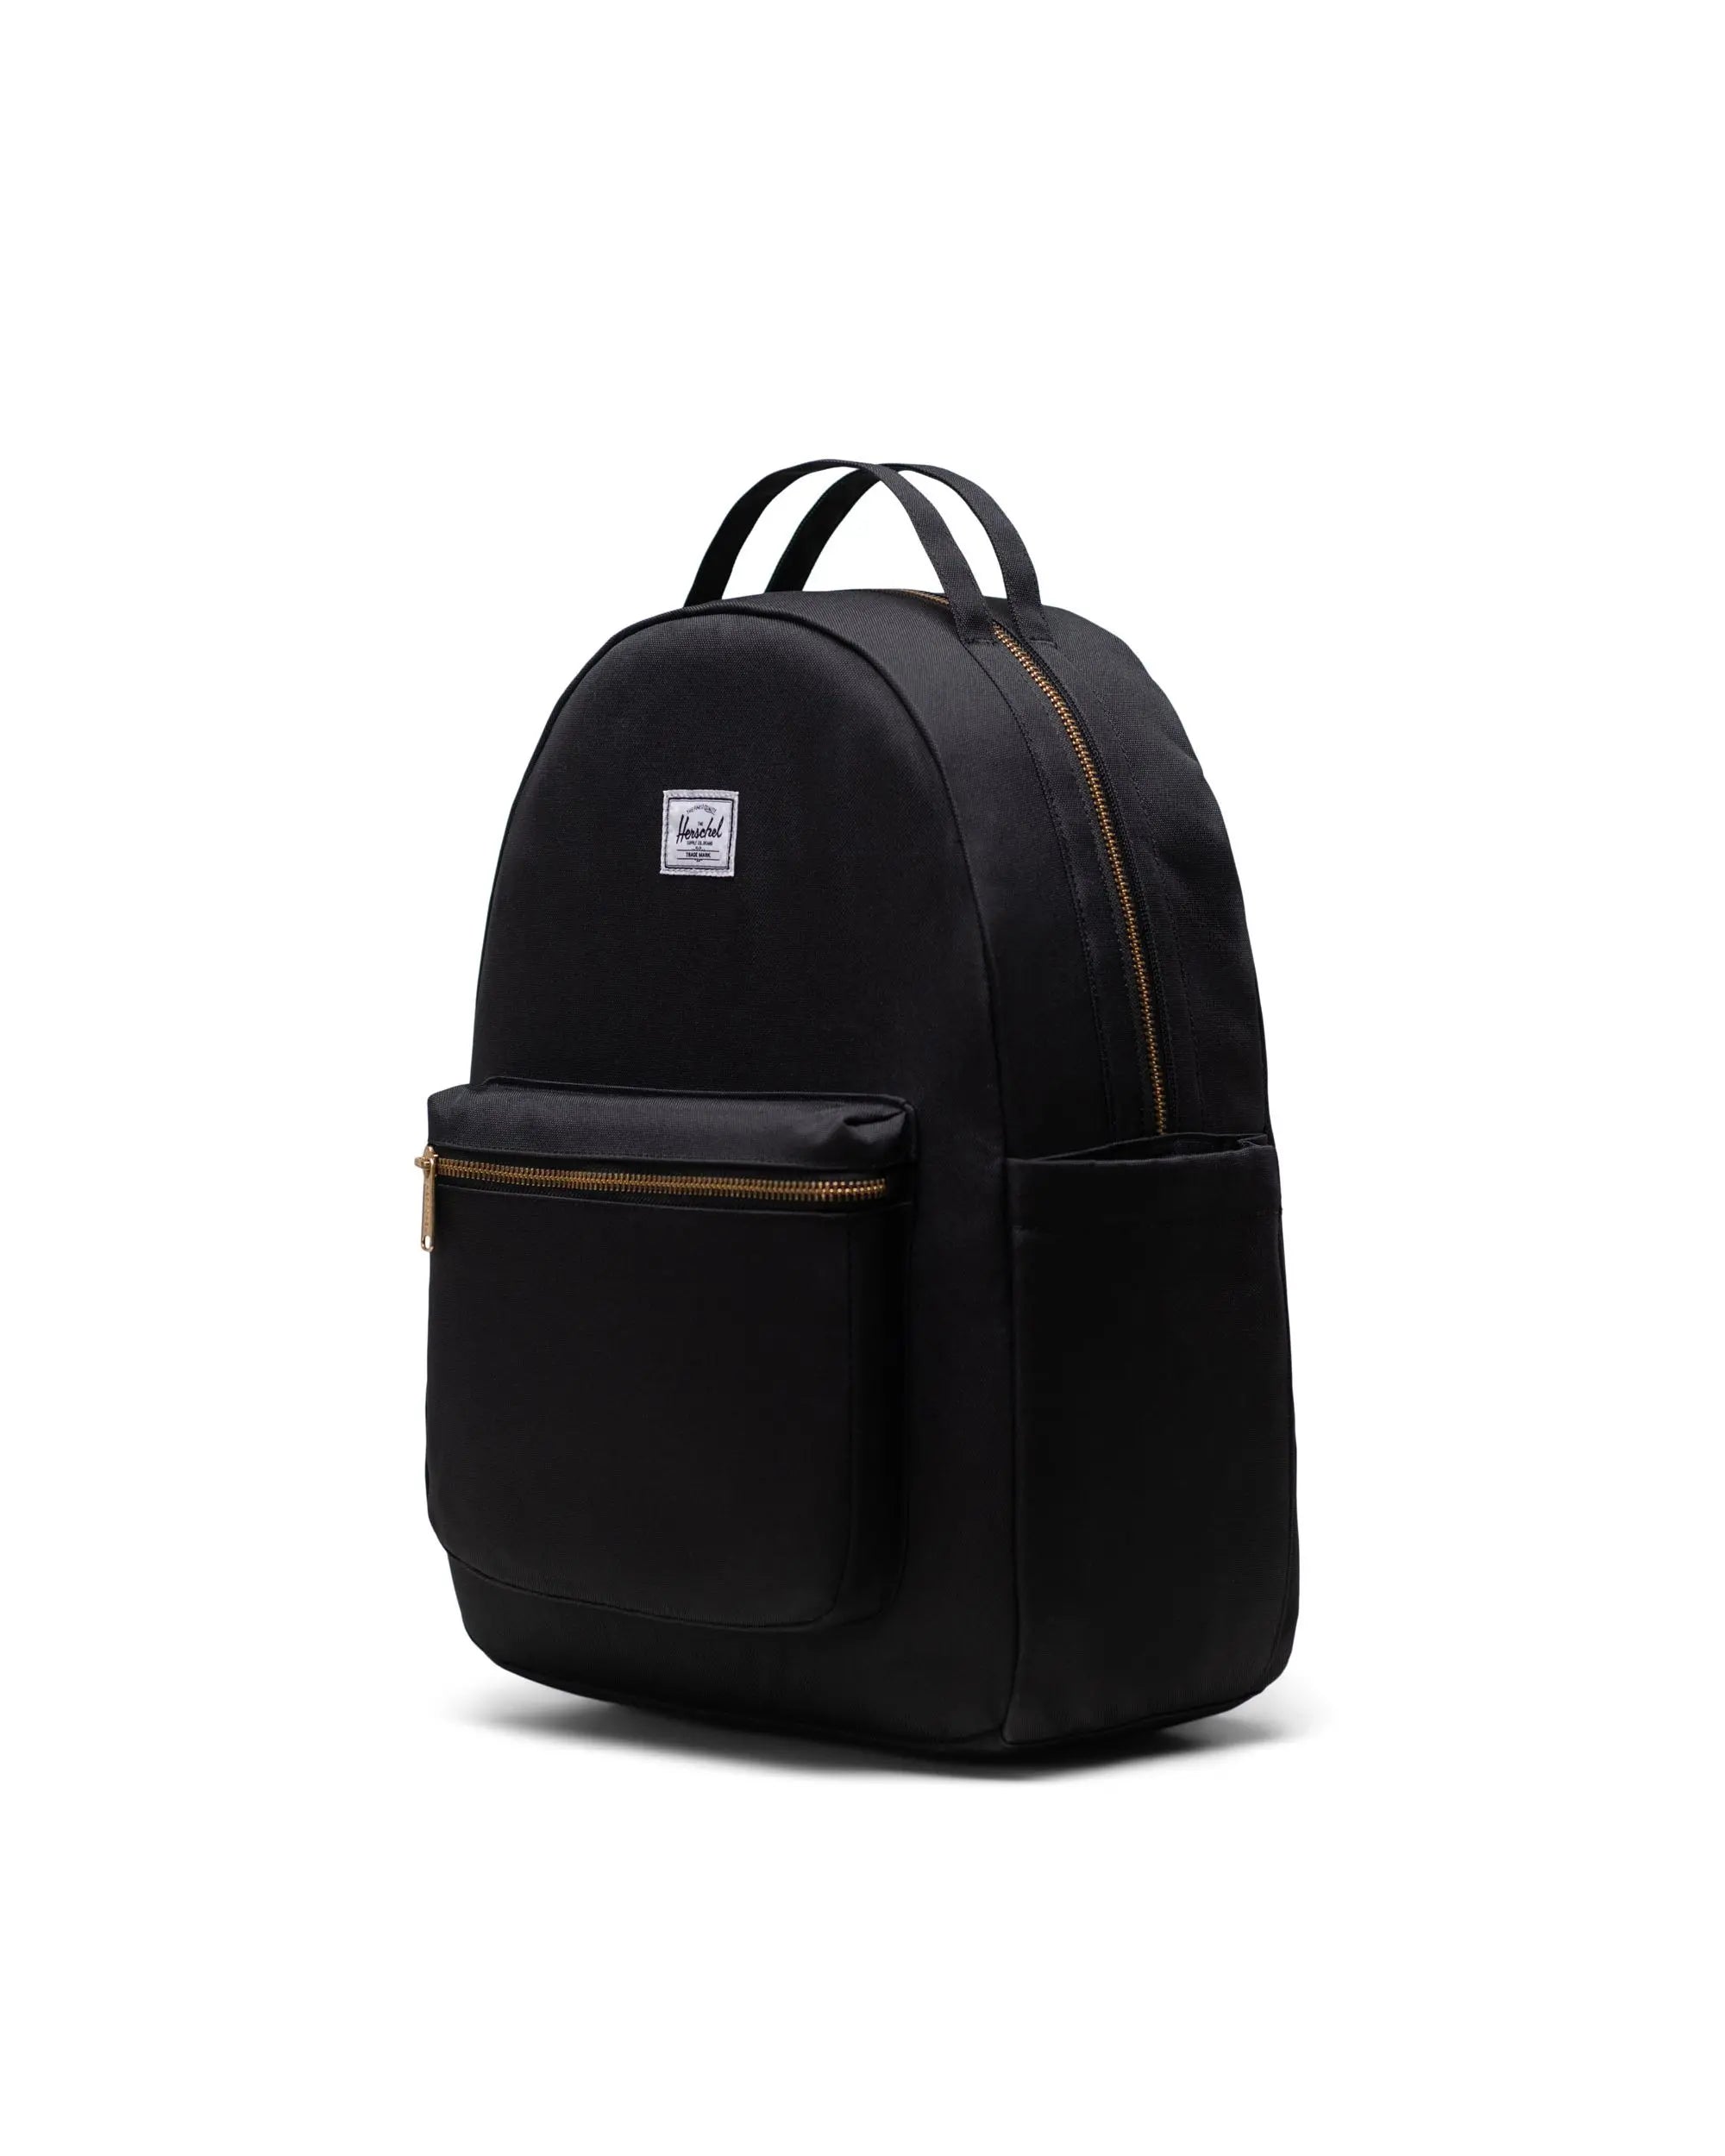 Black Diaper Bag Nova Backpack Herschel Nova Backpack Diaper Bag Black 2